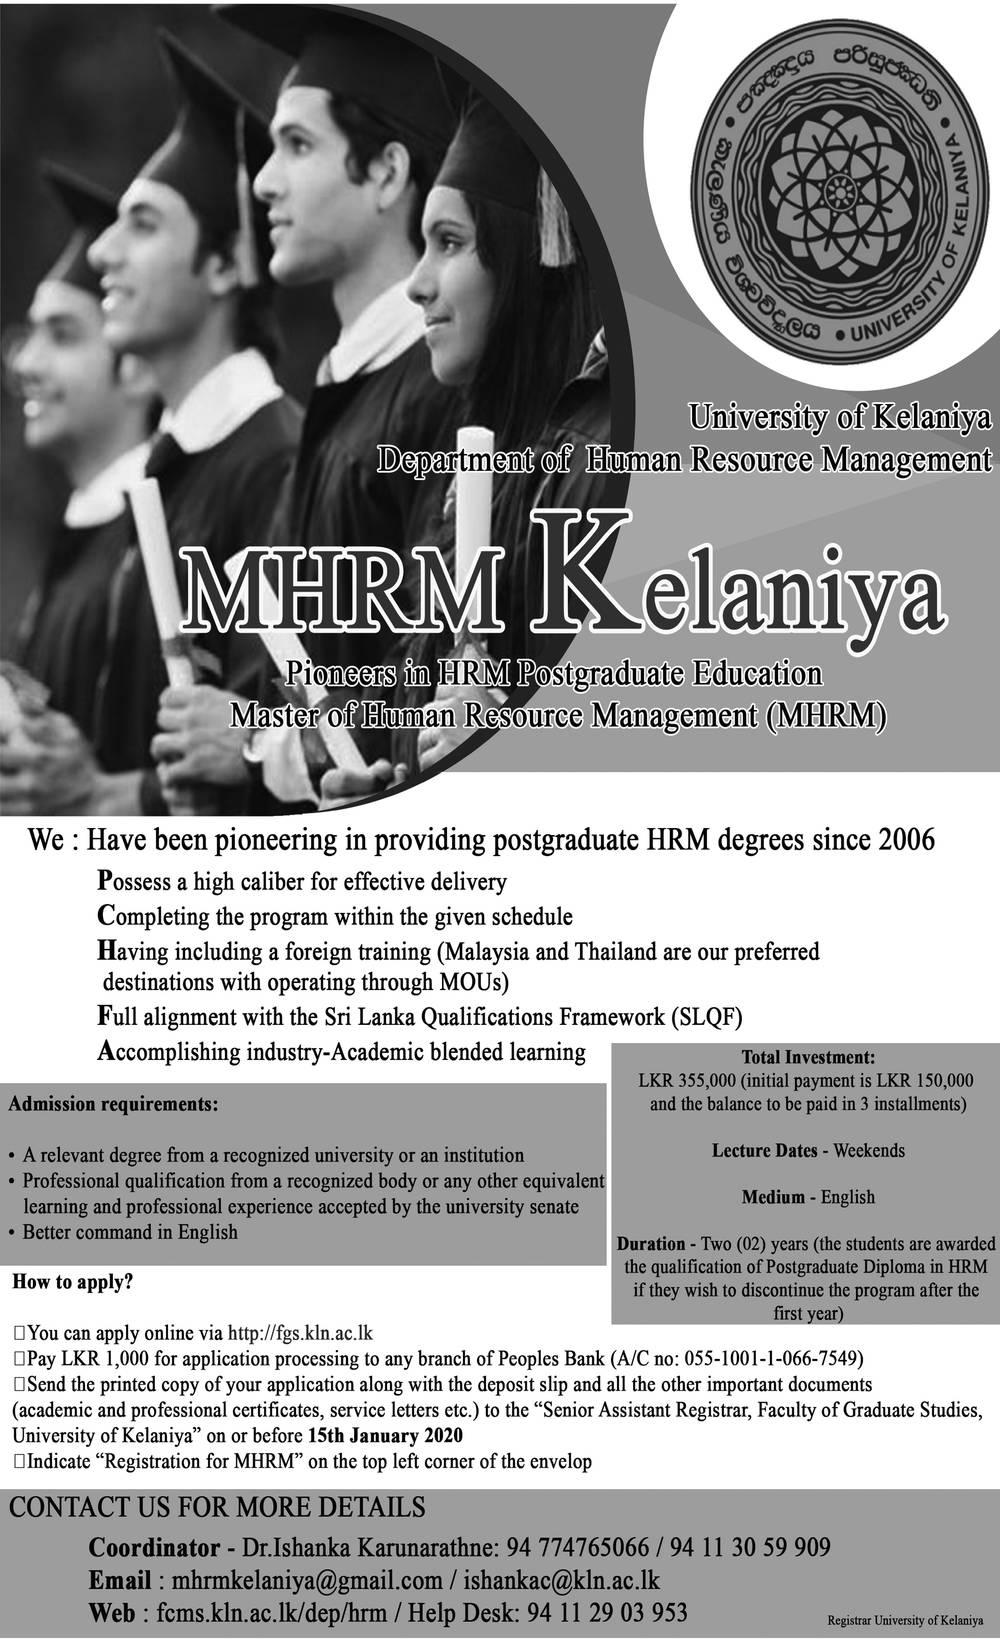 MHRM - University of Kelaniya